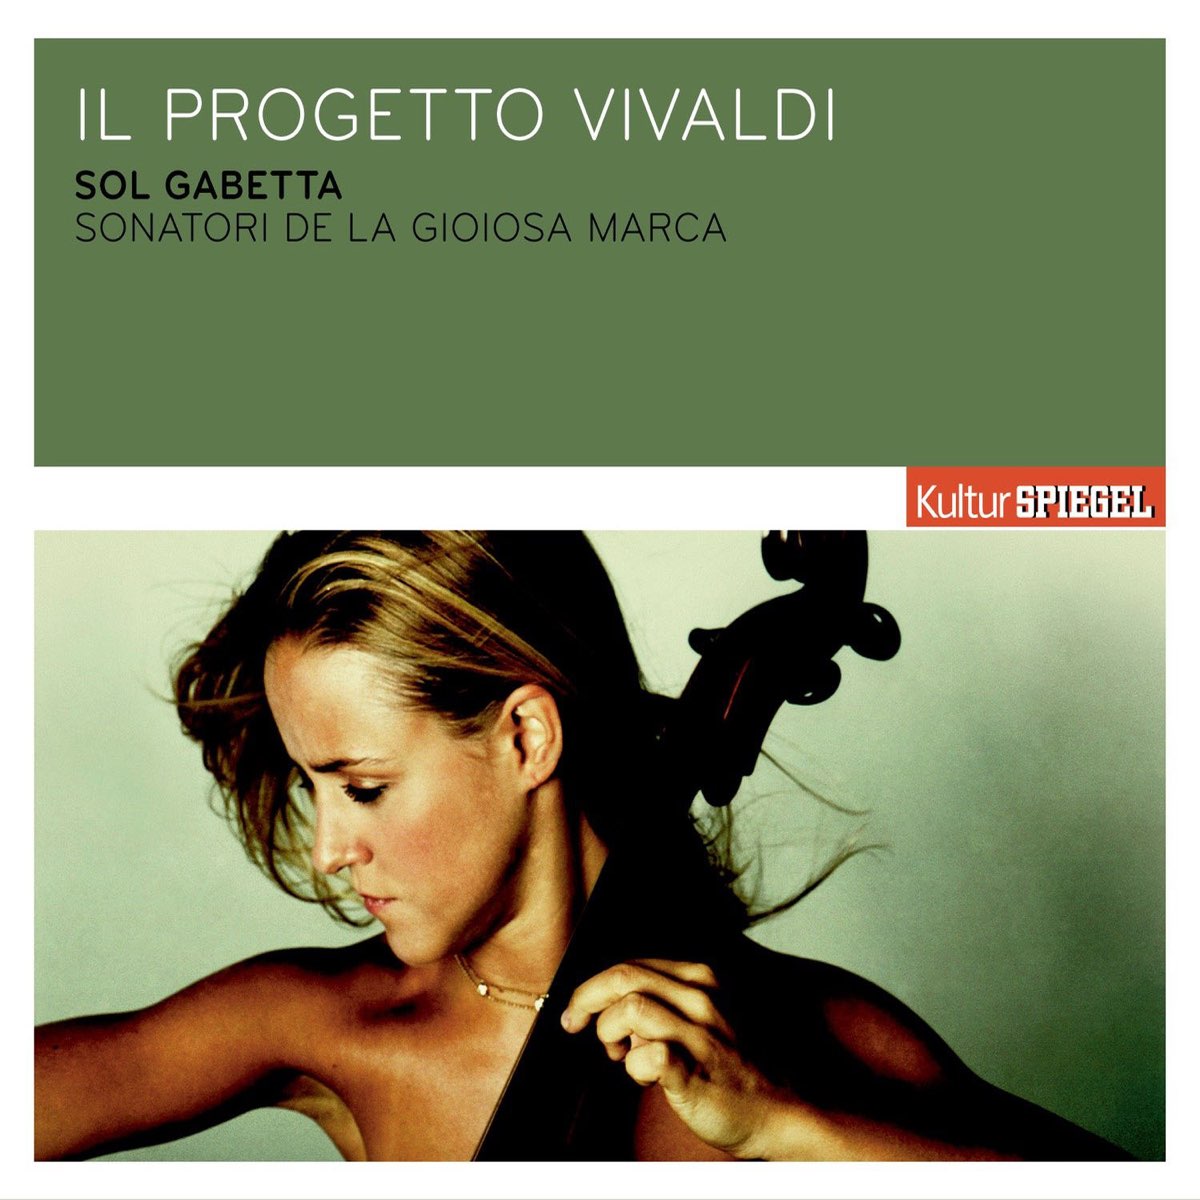 Il progetto Vivaldi - Album by Sol Gabetta & I Sonatori de la